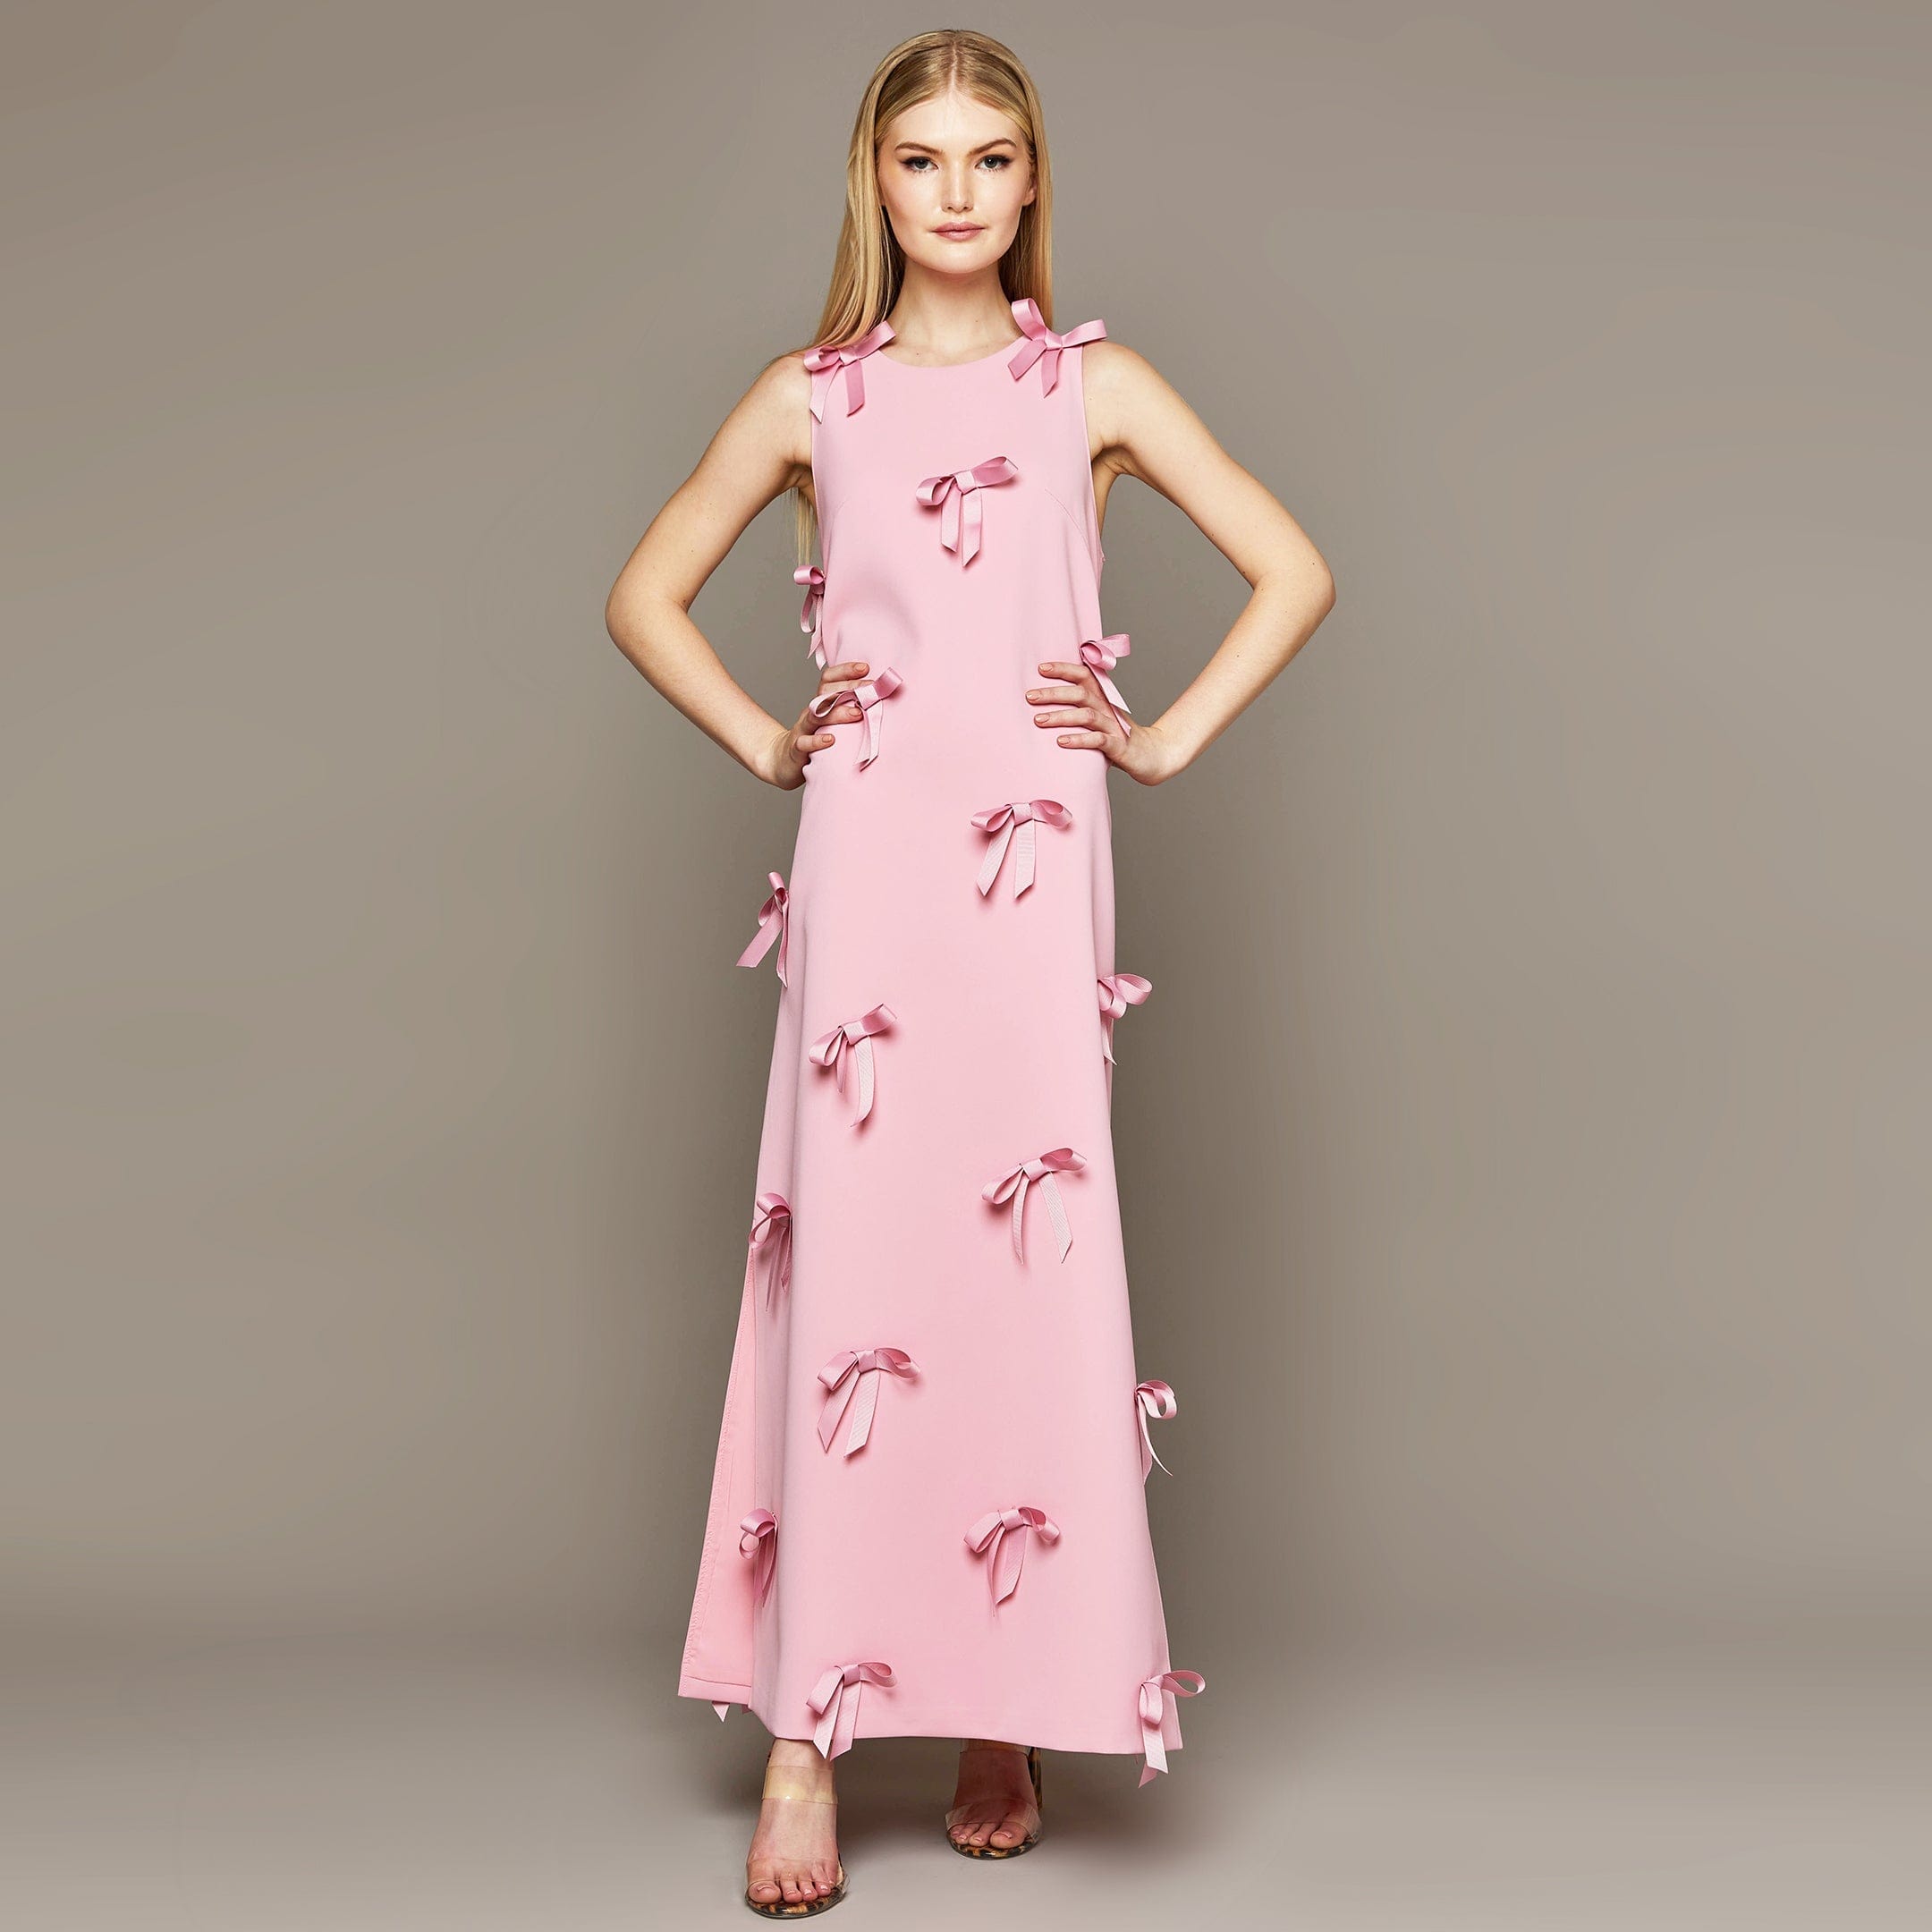 MME. Mink Dress MME. Carlton Bow Garden Dress - Rose